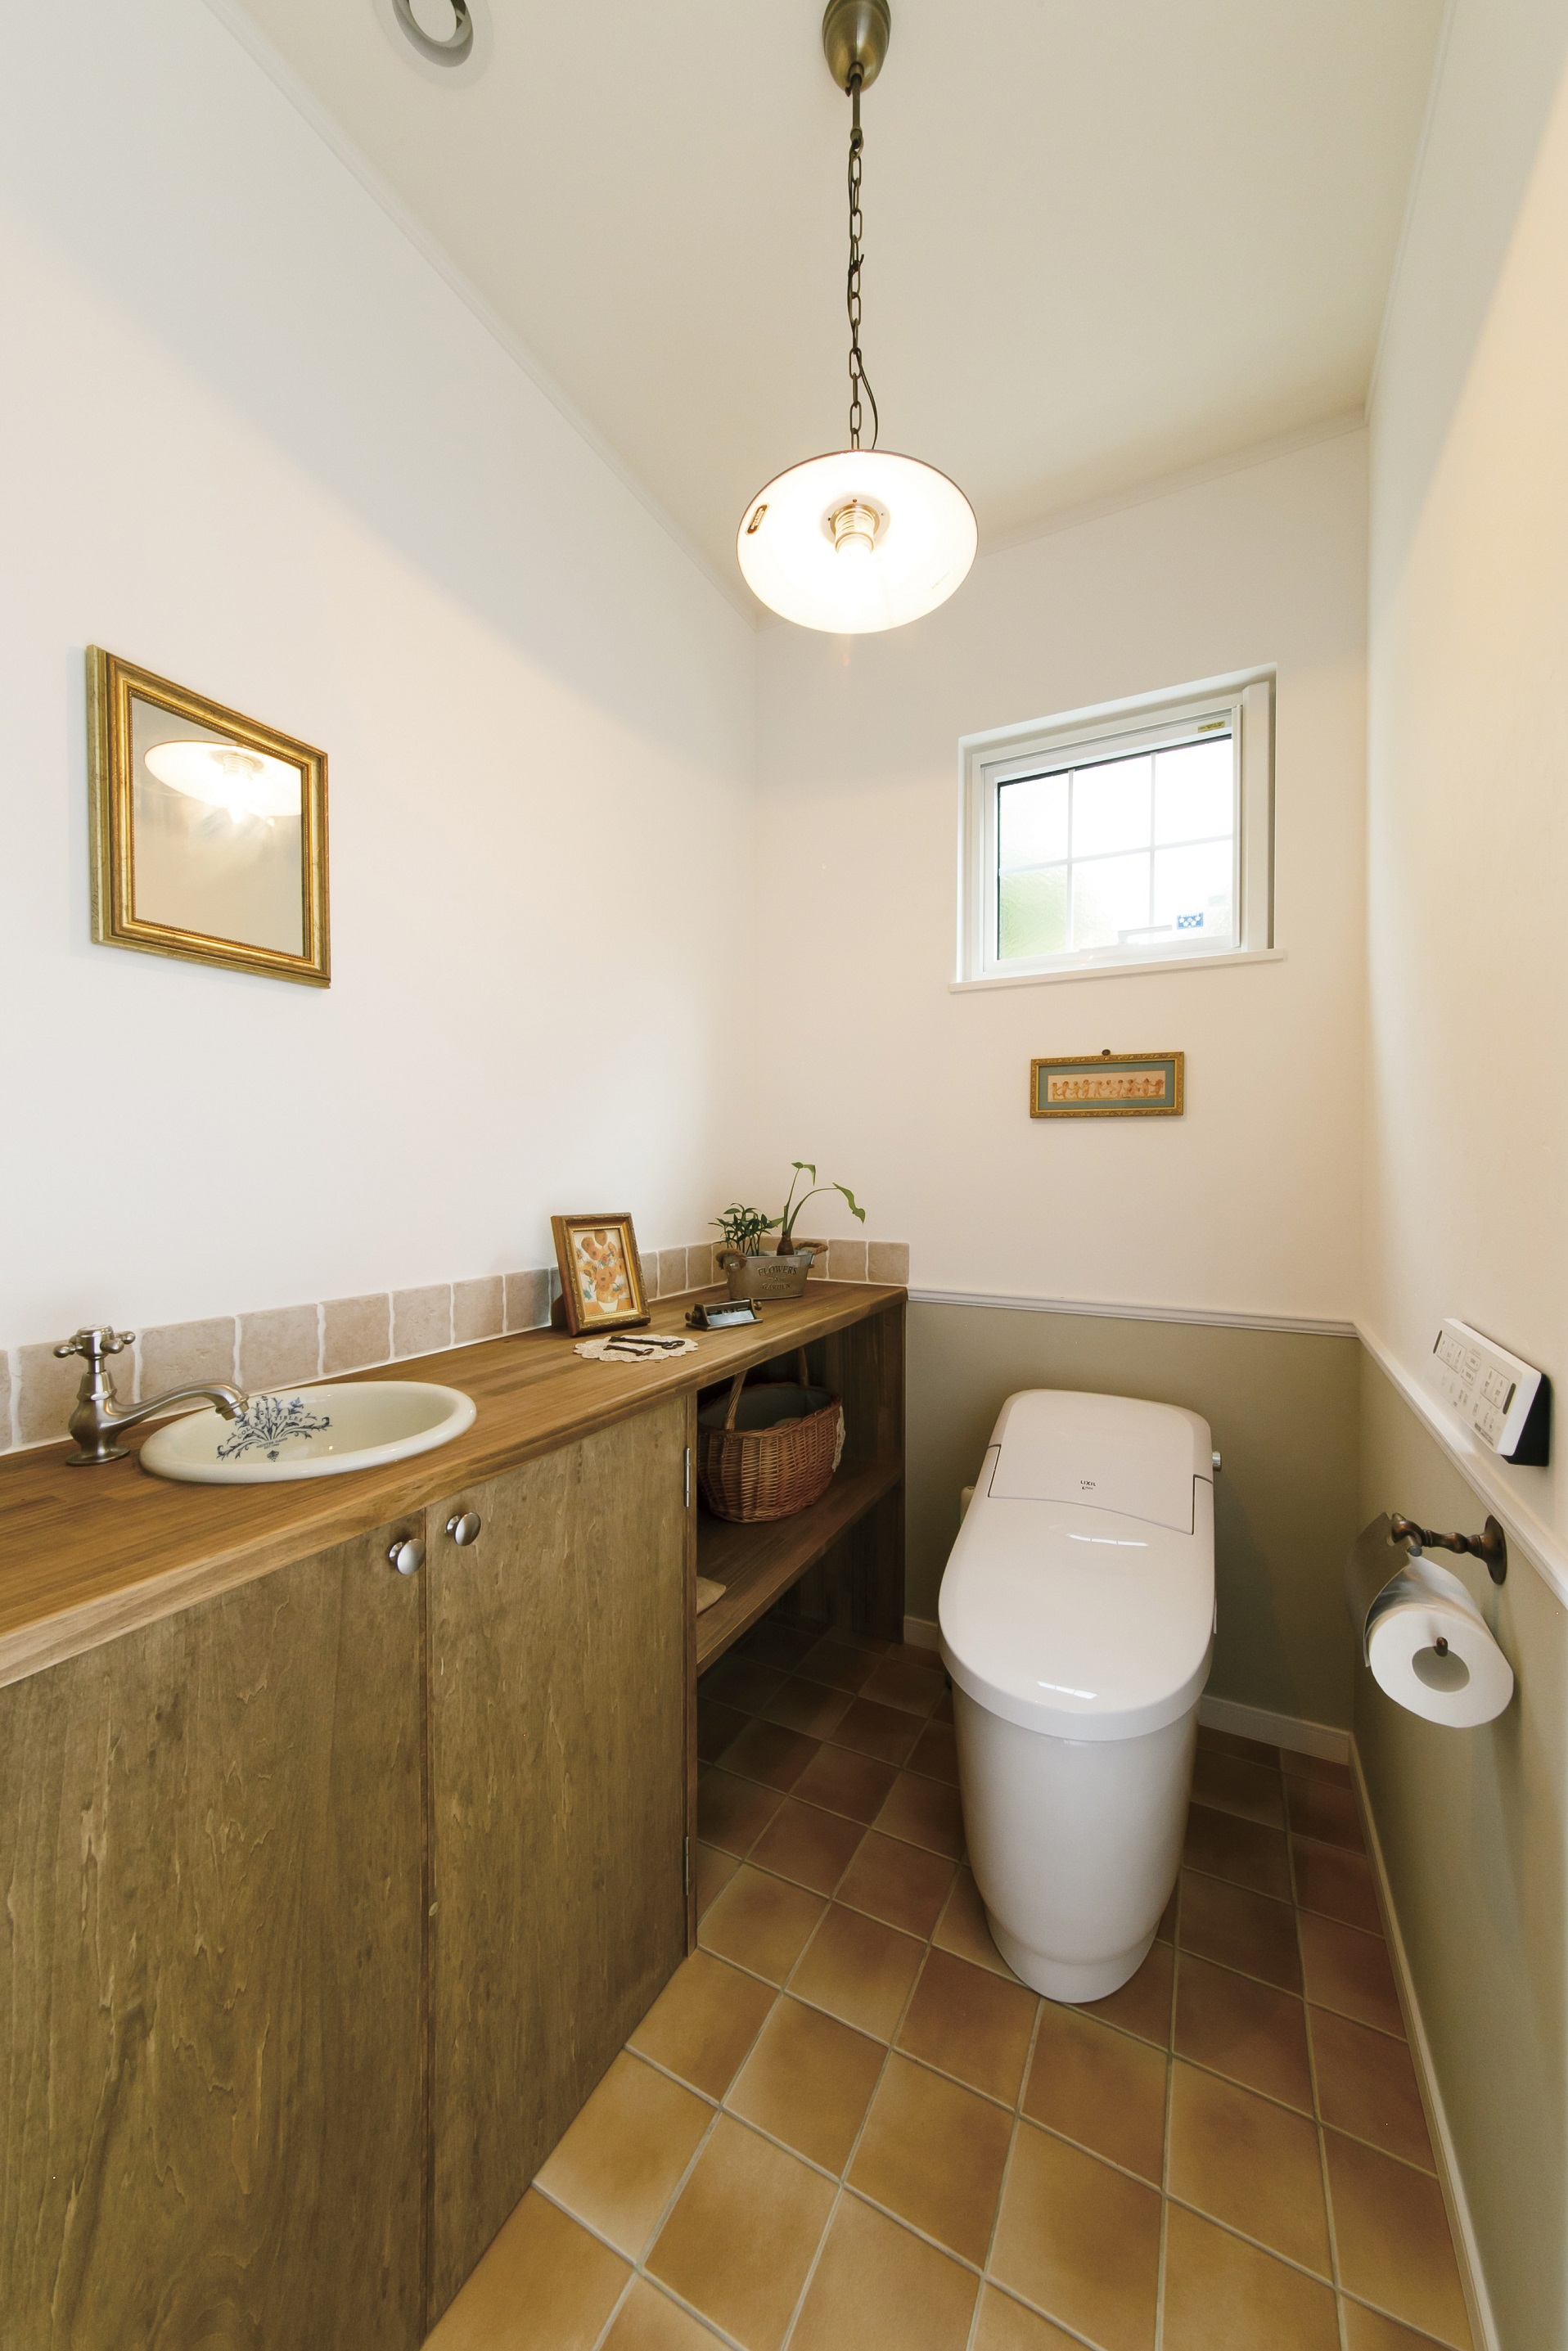 トイレの施工例 埼玉川越のかわいい ・かっこいい自然素材の輸入注文住宅アートクラフト